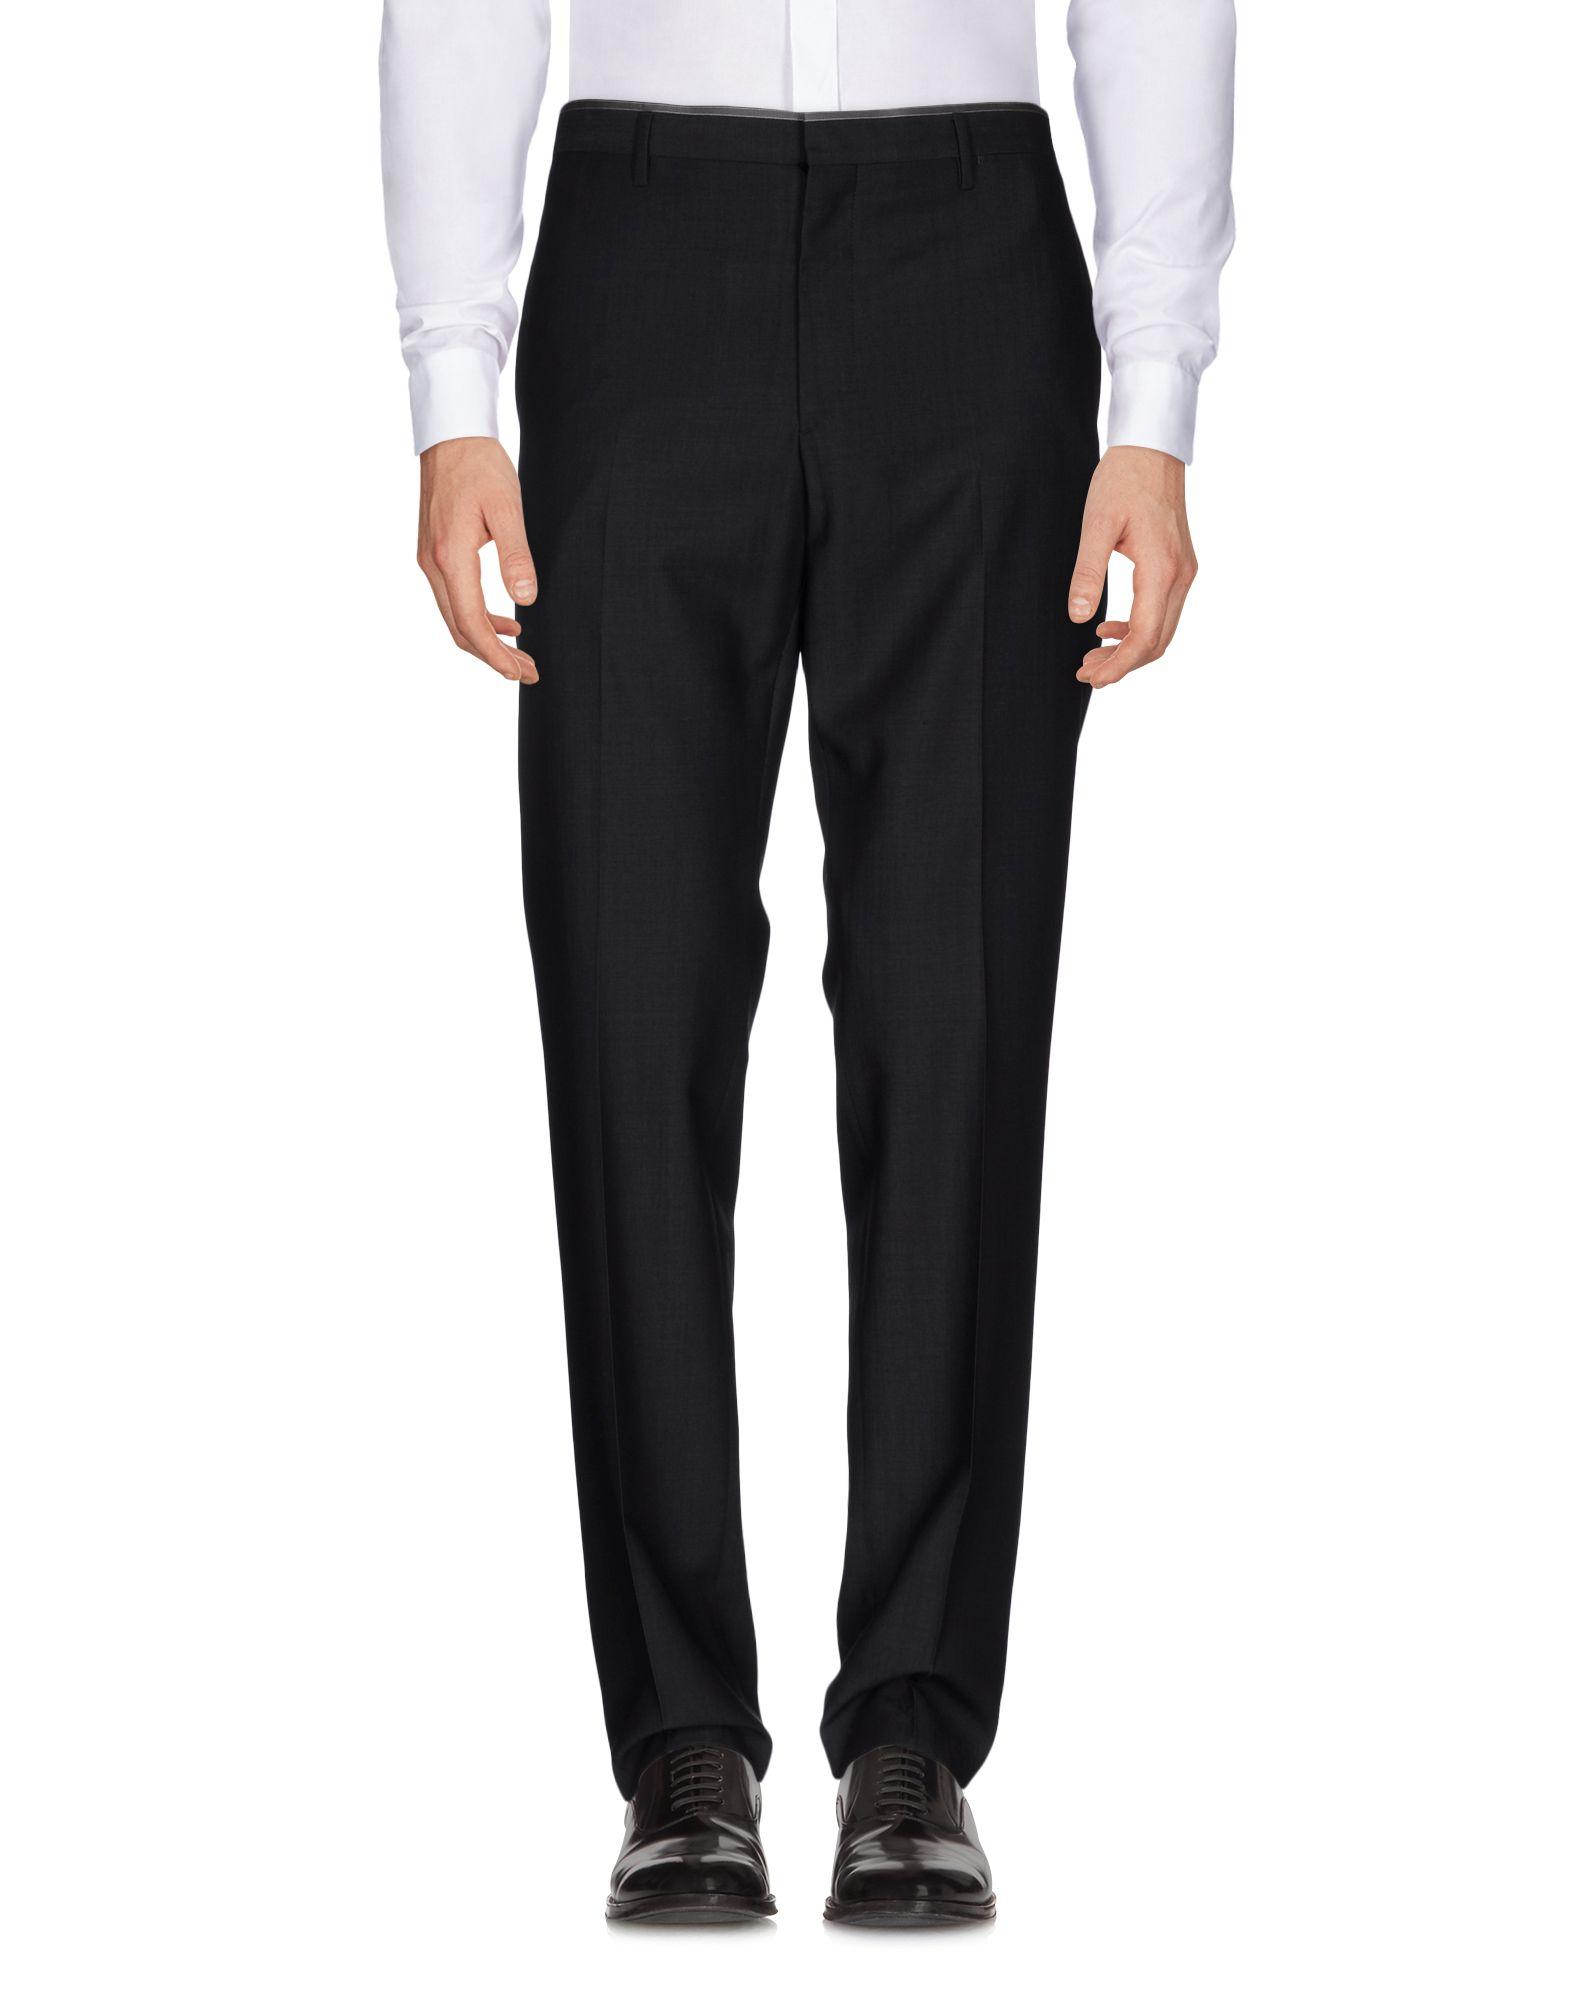 Lyst - Prada Casual Pants in Black for Men